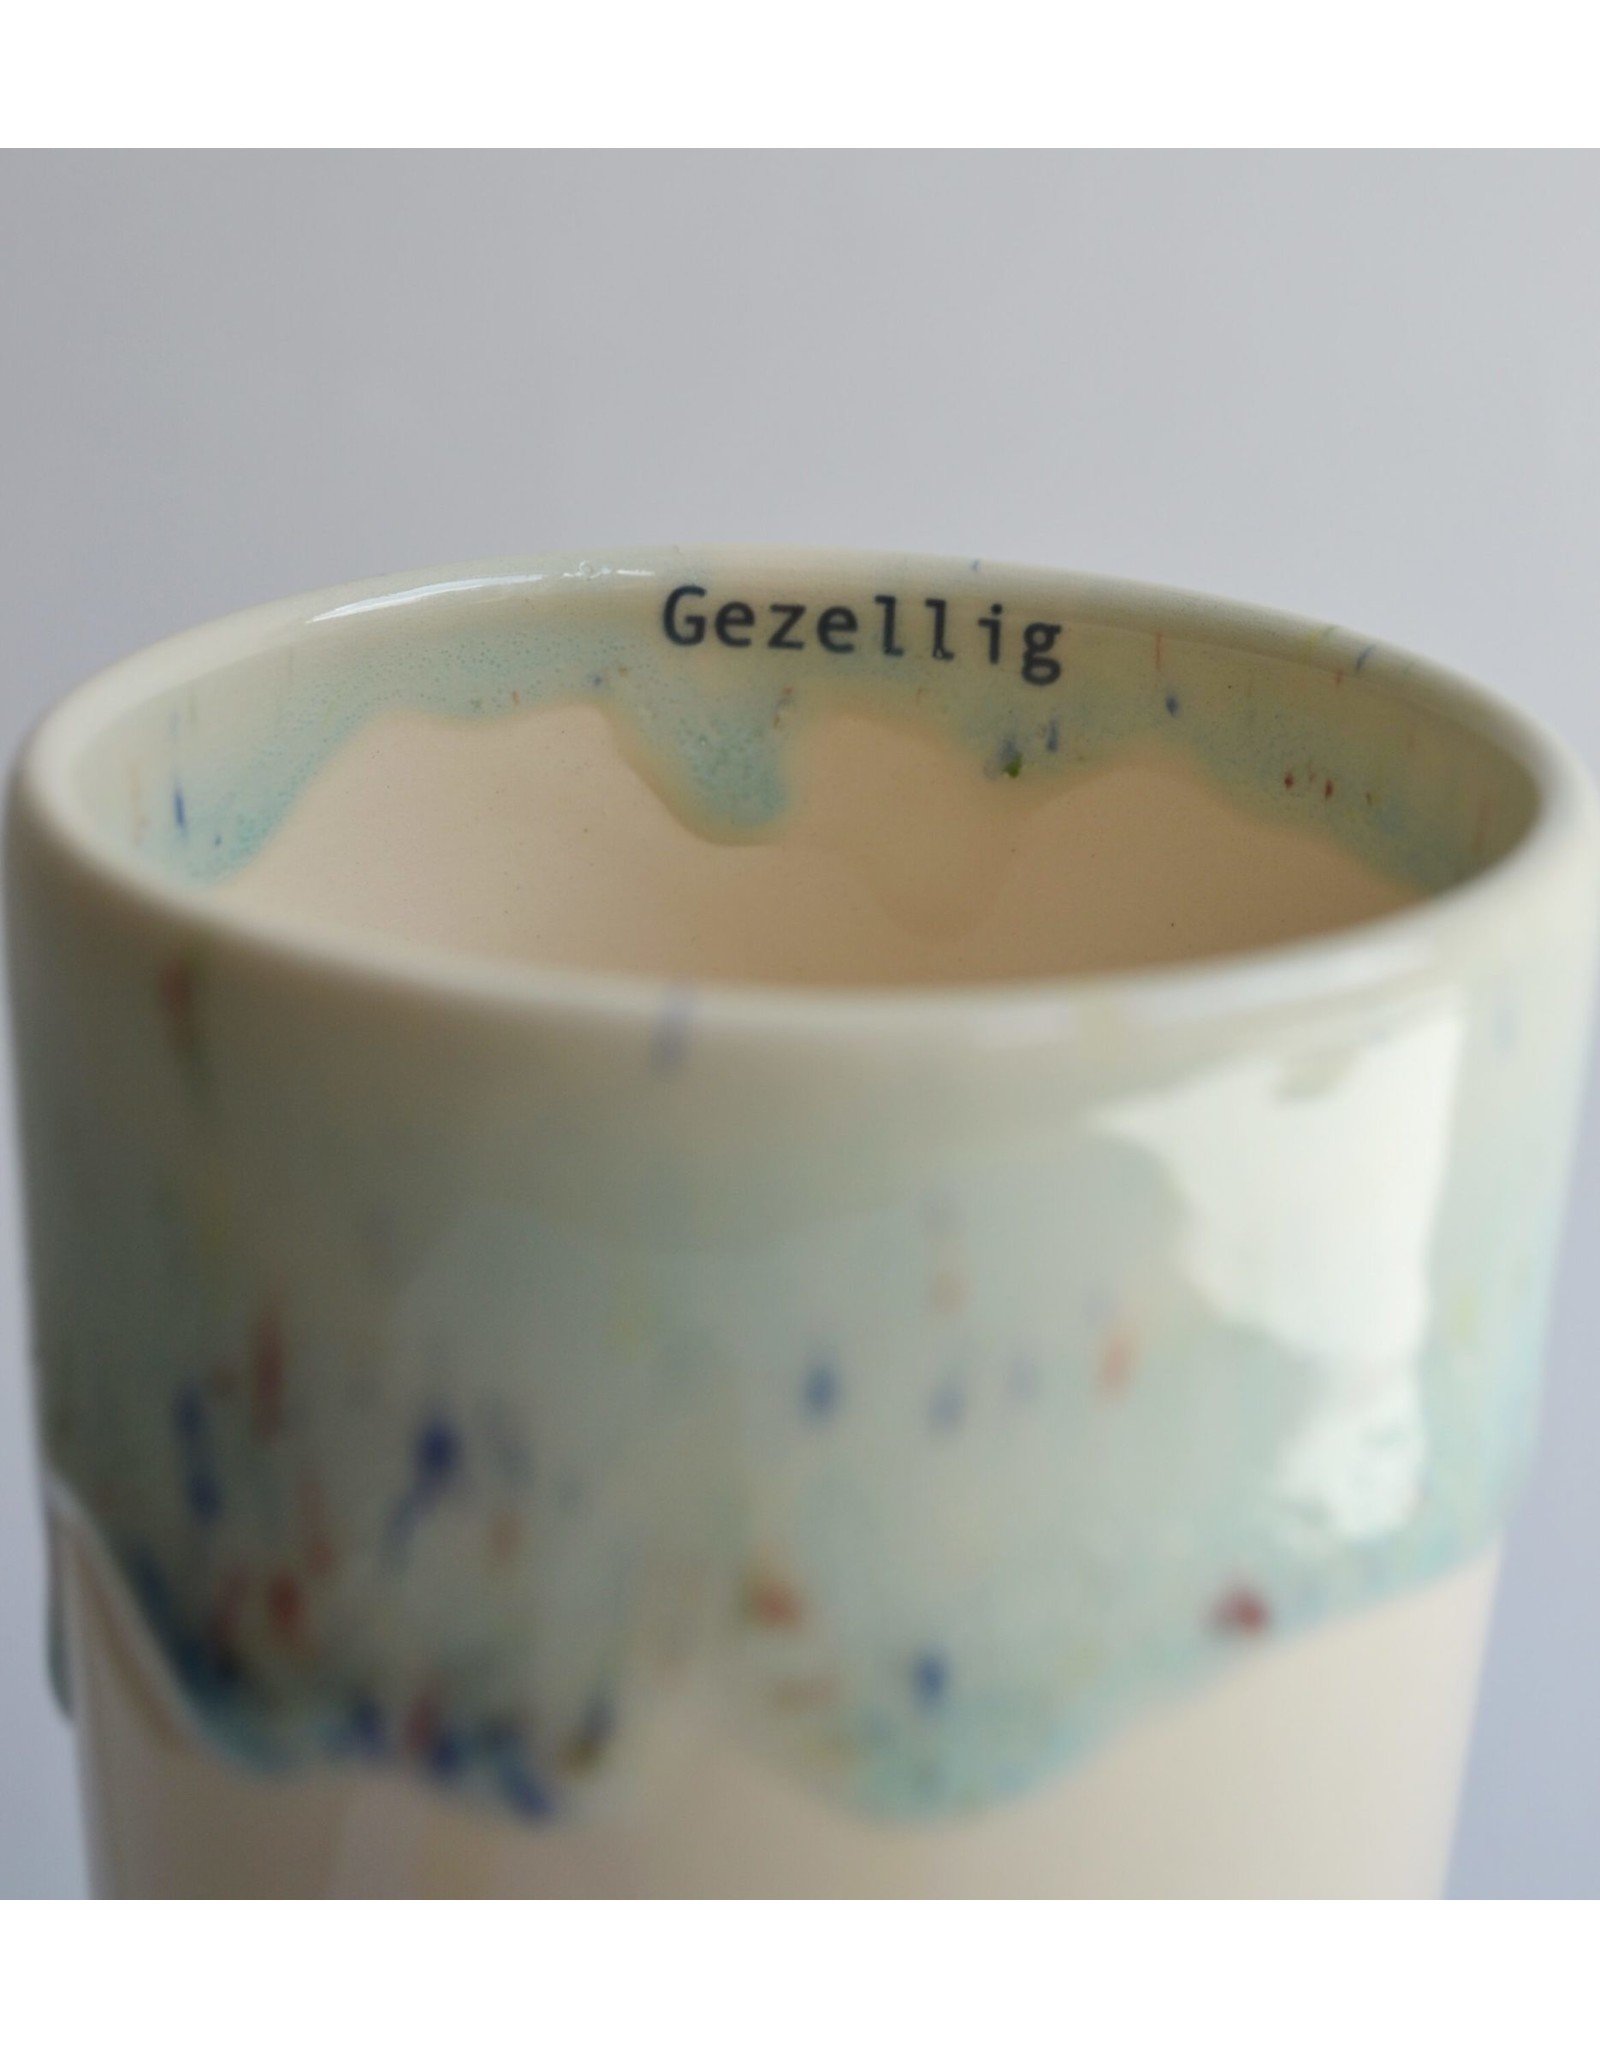 Kesemy design 'Gezellig' Cup - Blauw - 300ml - Ø 9 x 8,5 cm -